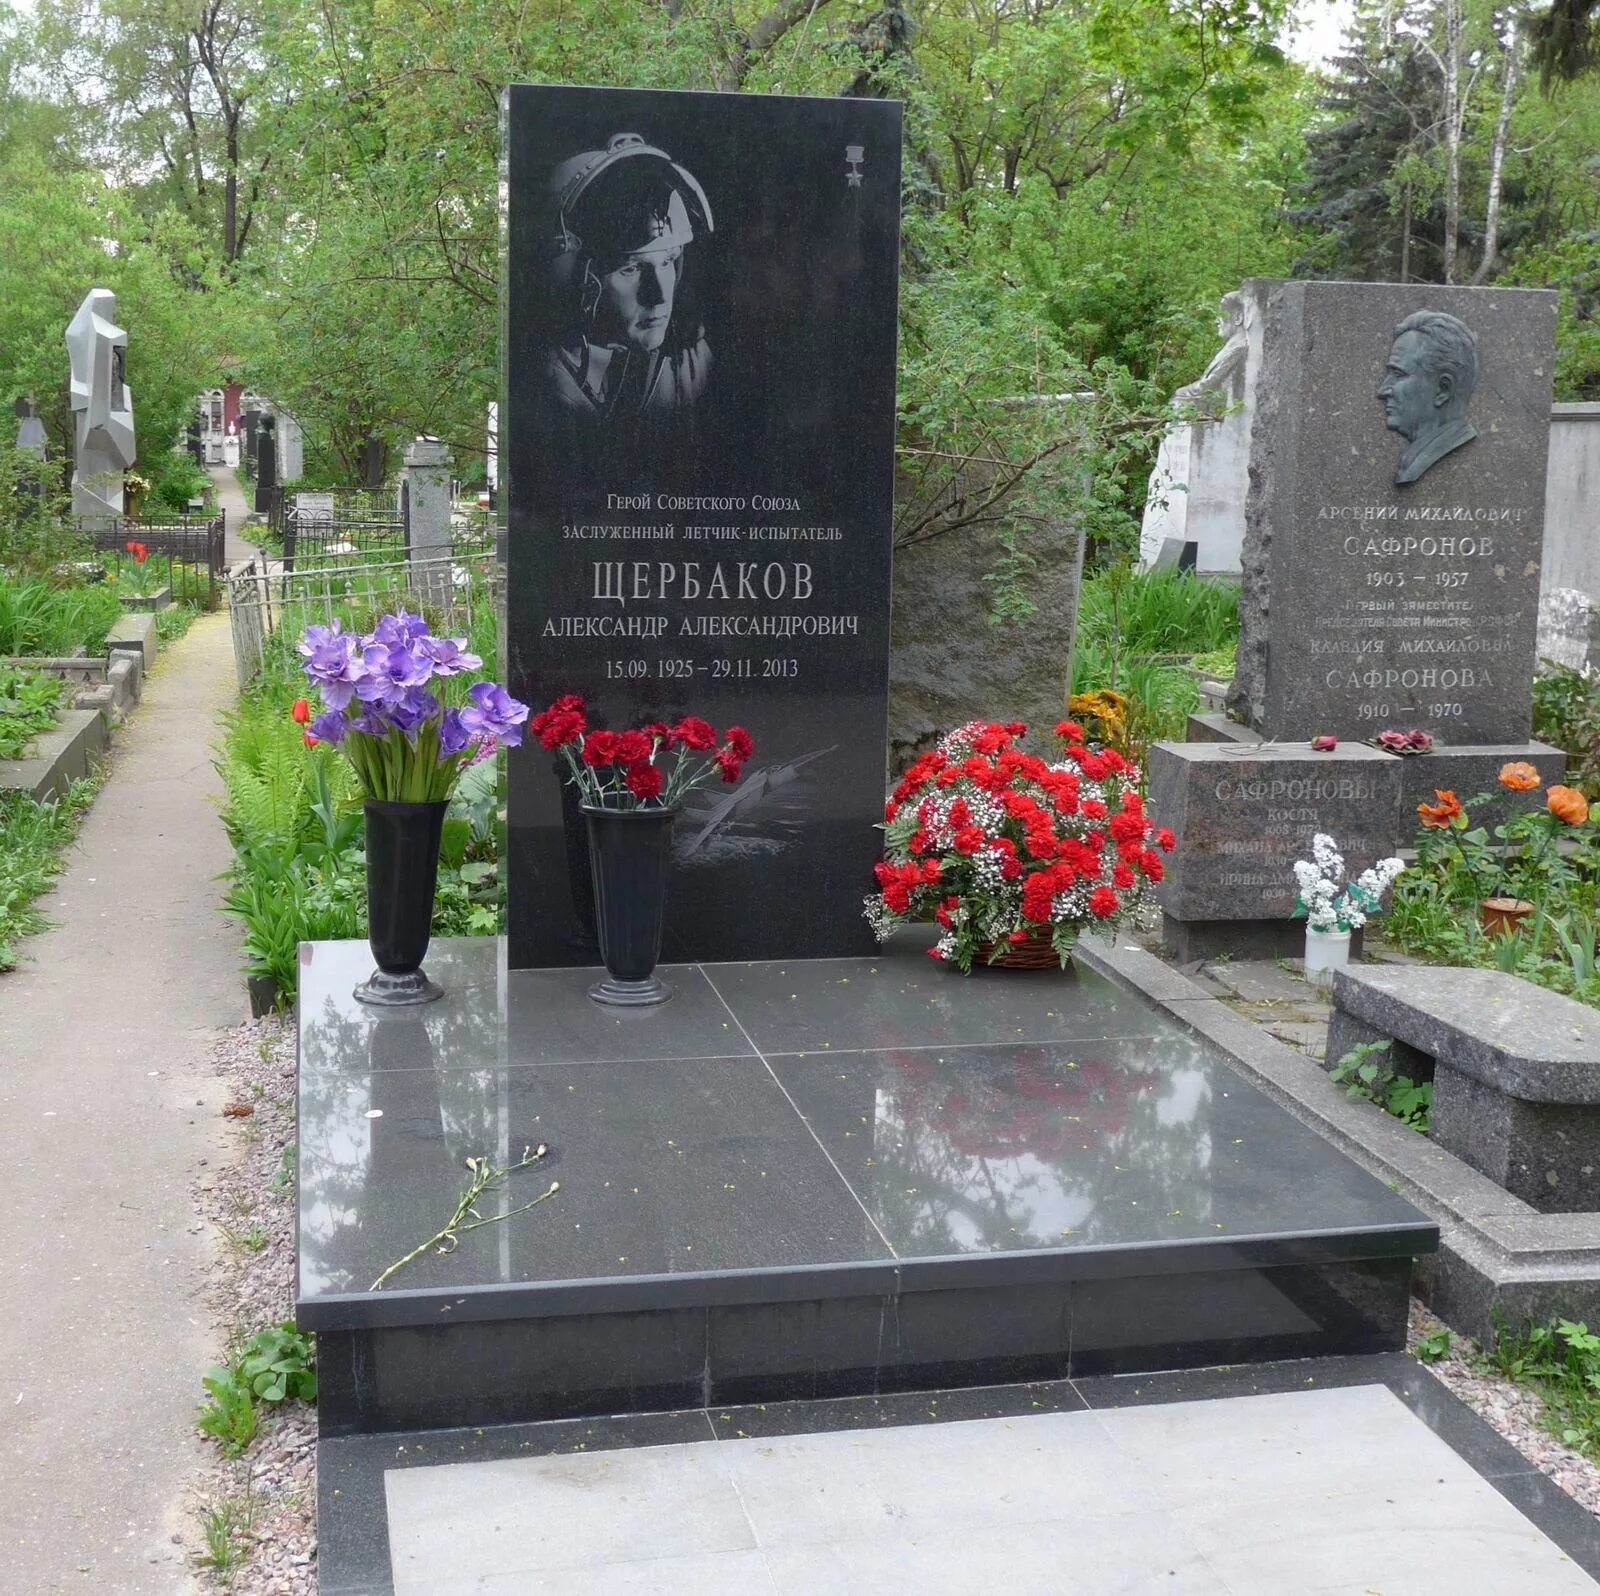 Где похоронен летчик. Новодевичье кладбище могилы летчиков Испытателей. Памятник военному летчику на кладбище.